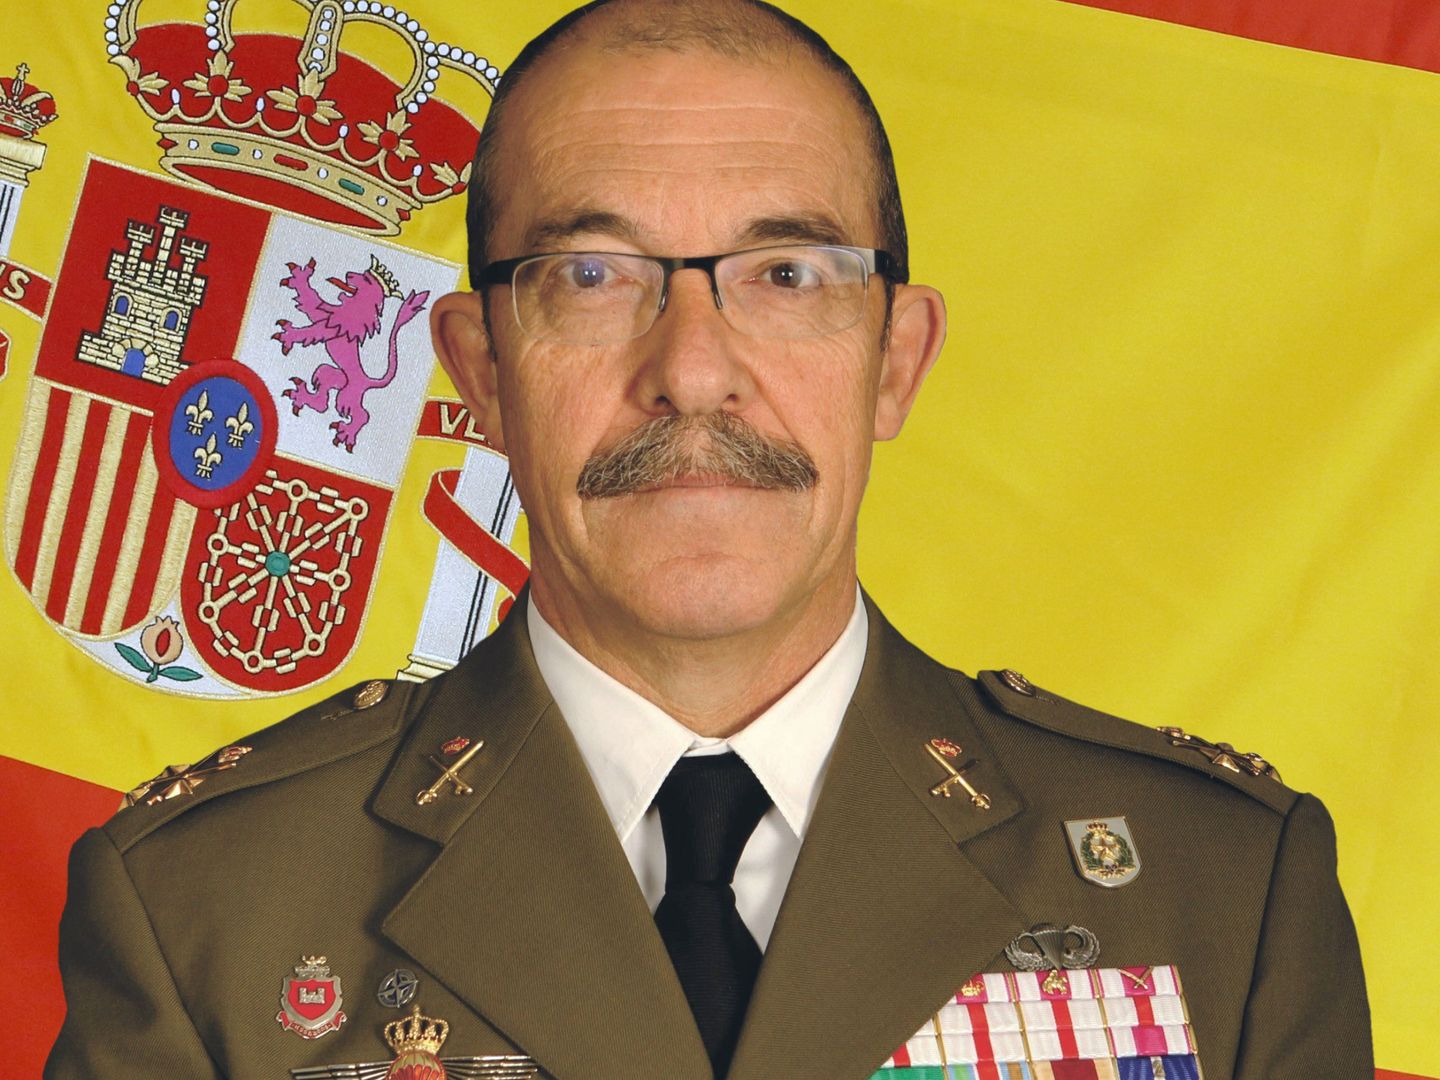 Fotografía publicada en la página web del ministerio de Defensa, del teniente general Fernando Alejandre Martínez. (EFE)